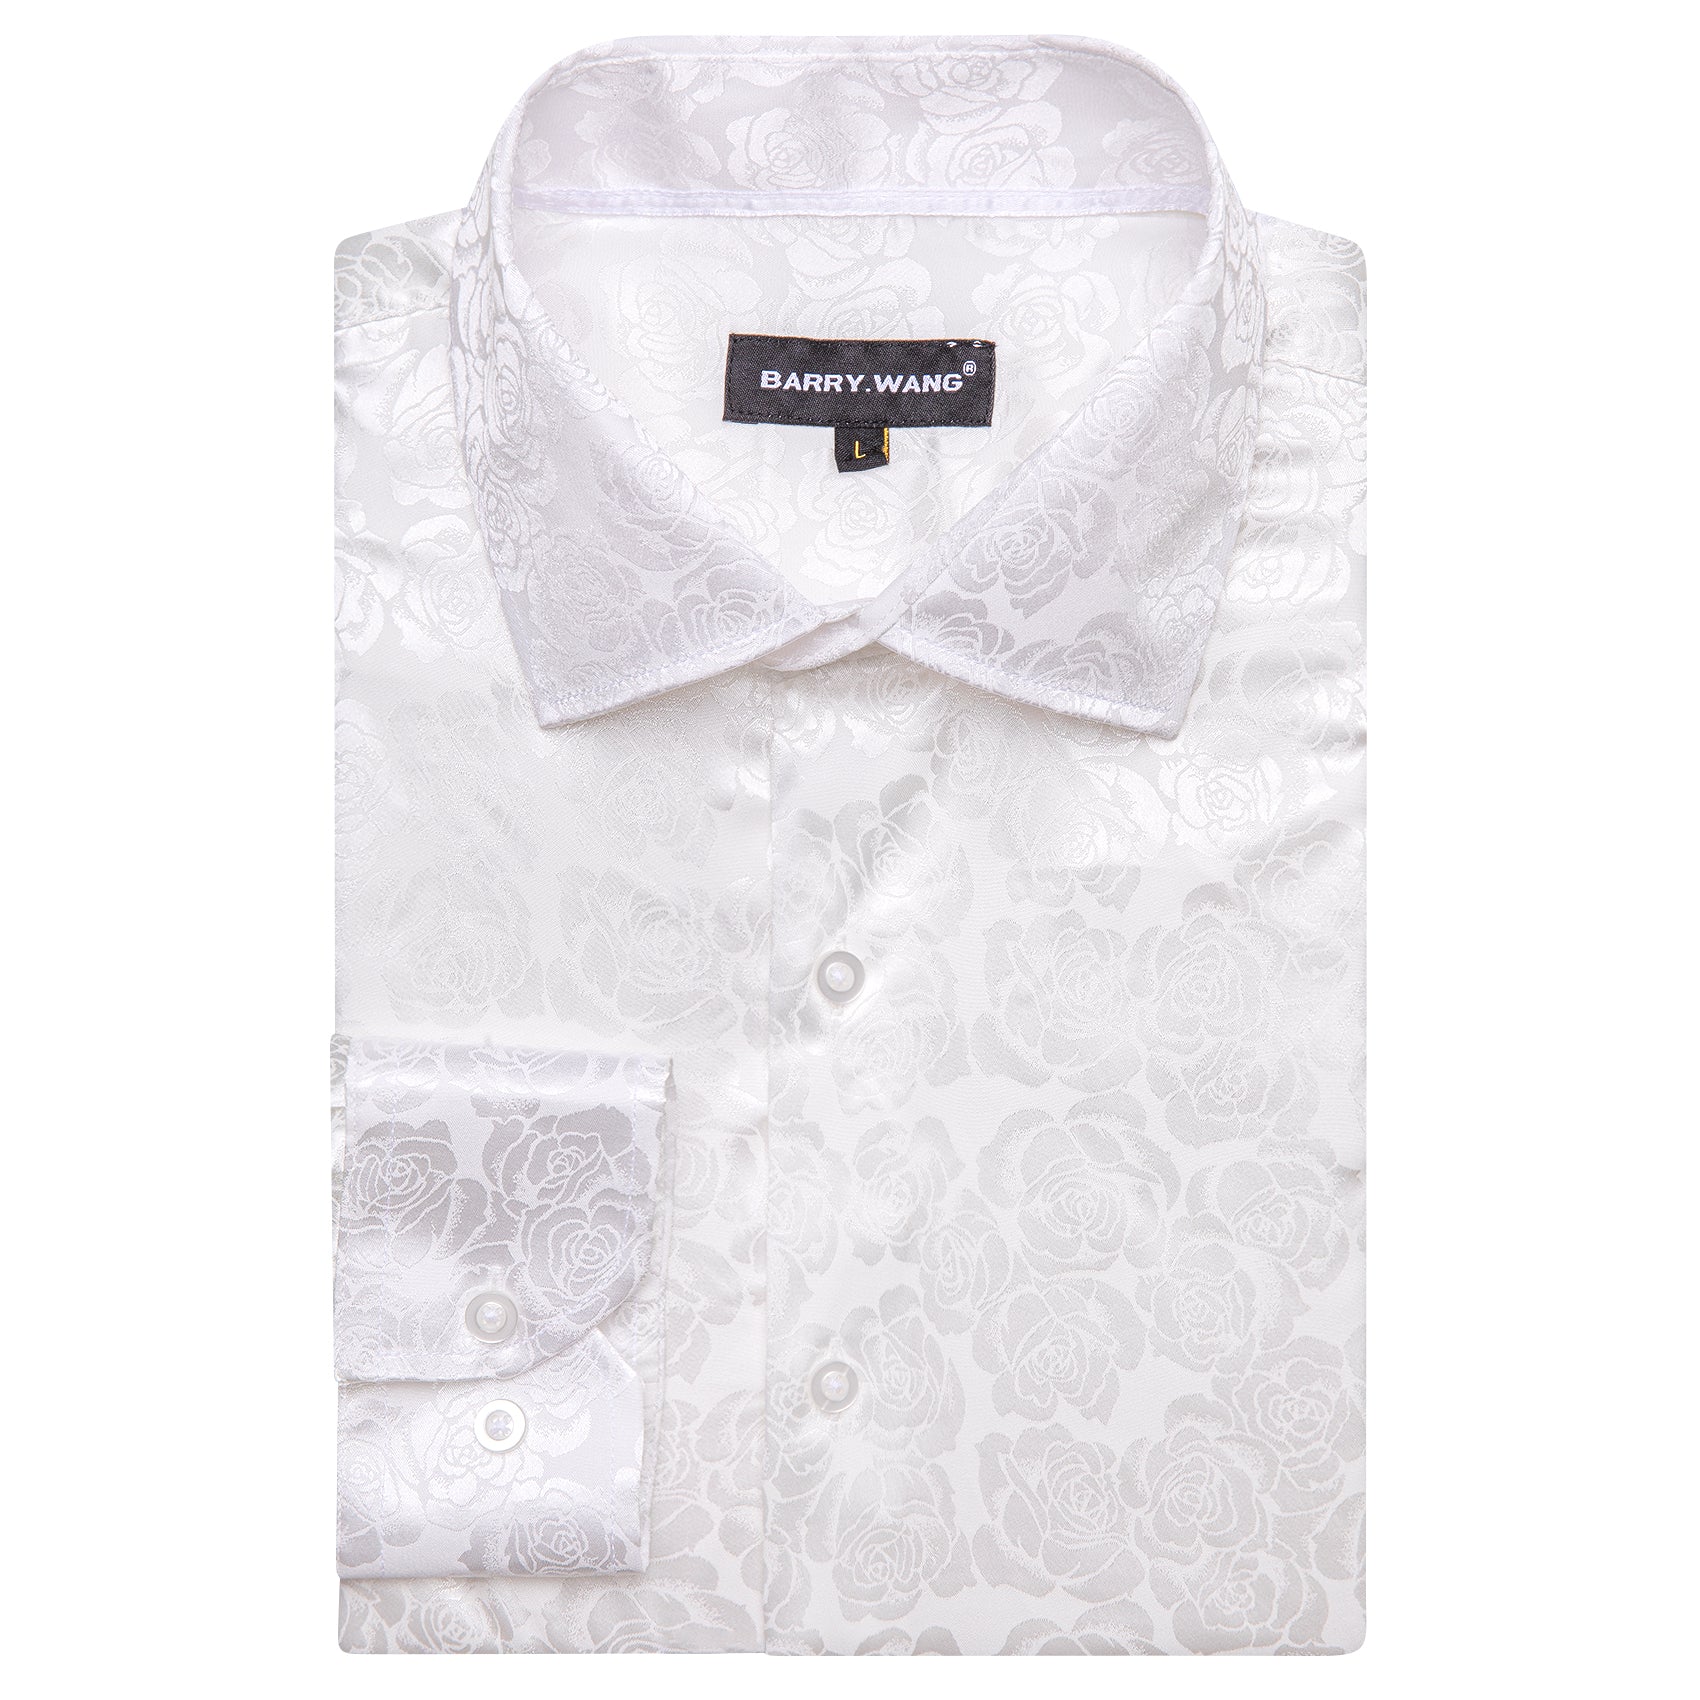 Barry.wang White Print Flower Silk Men's Shirt